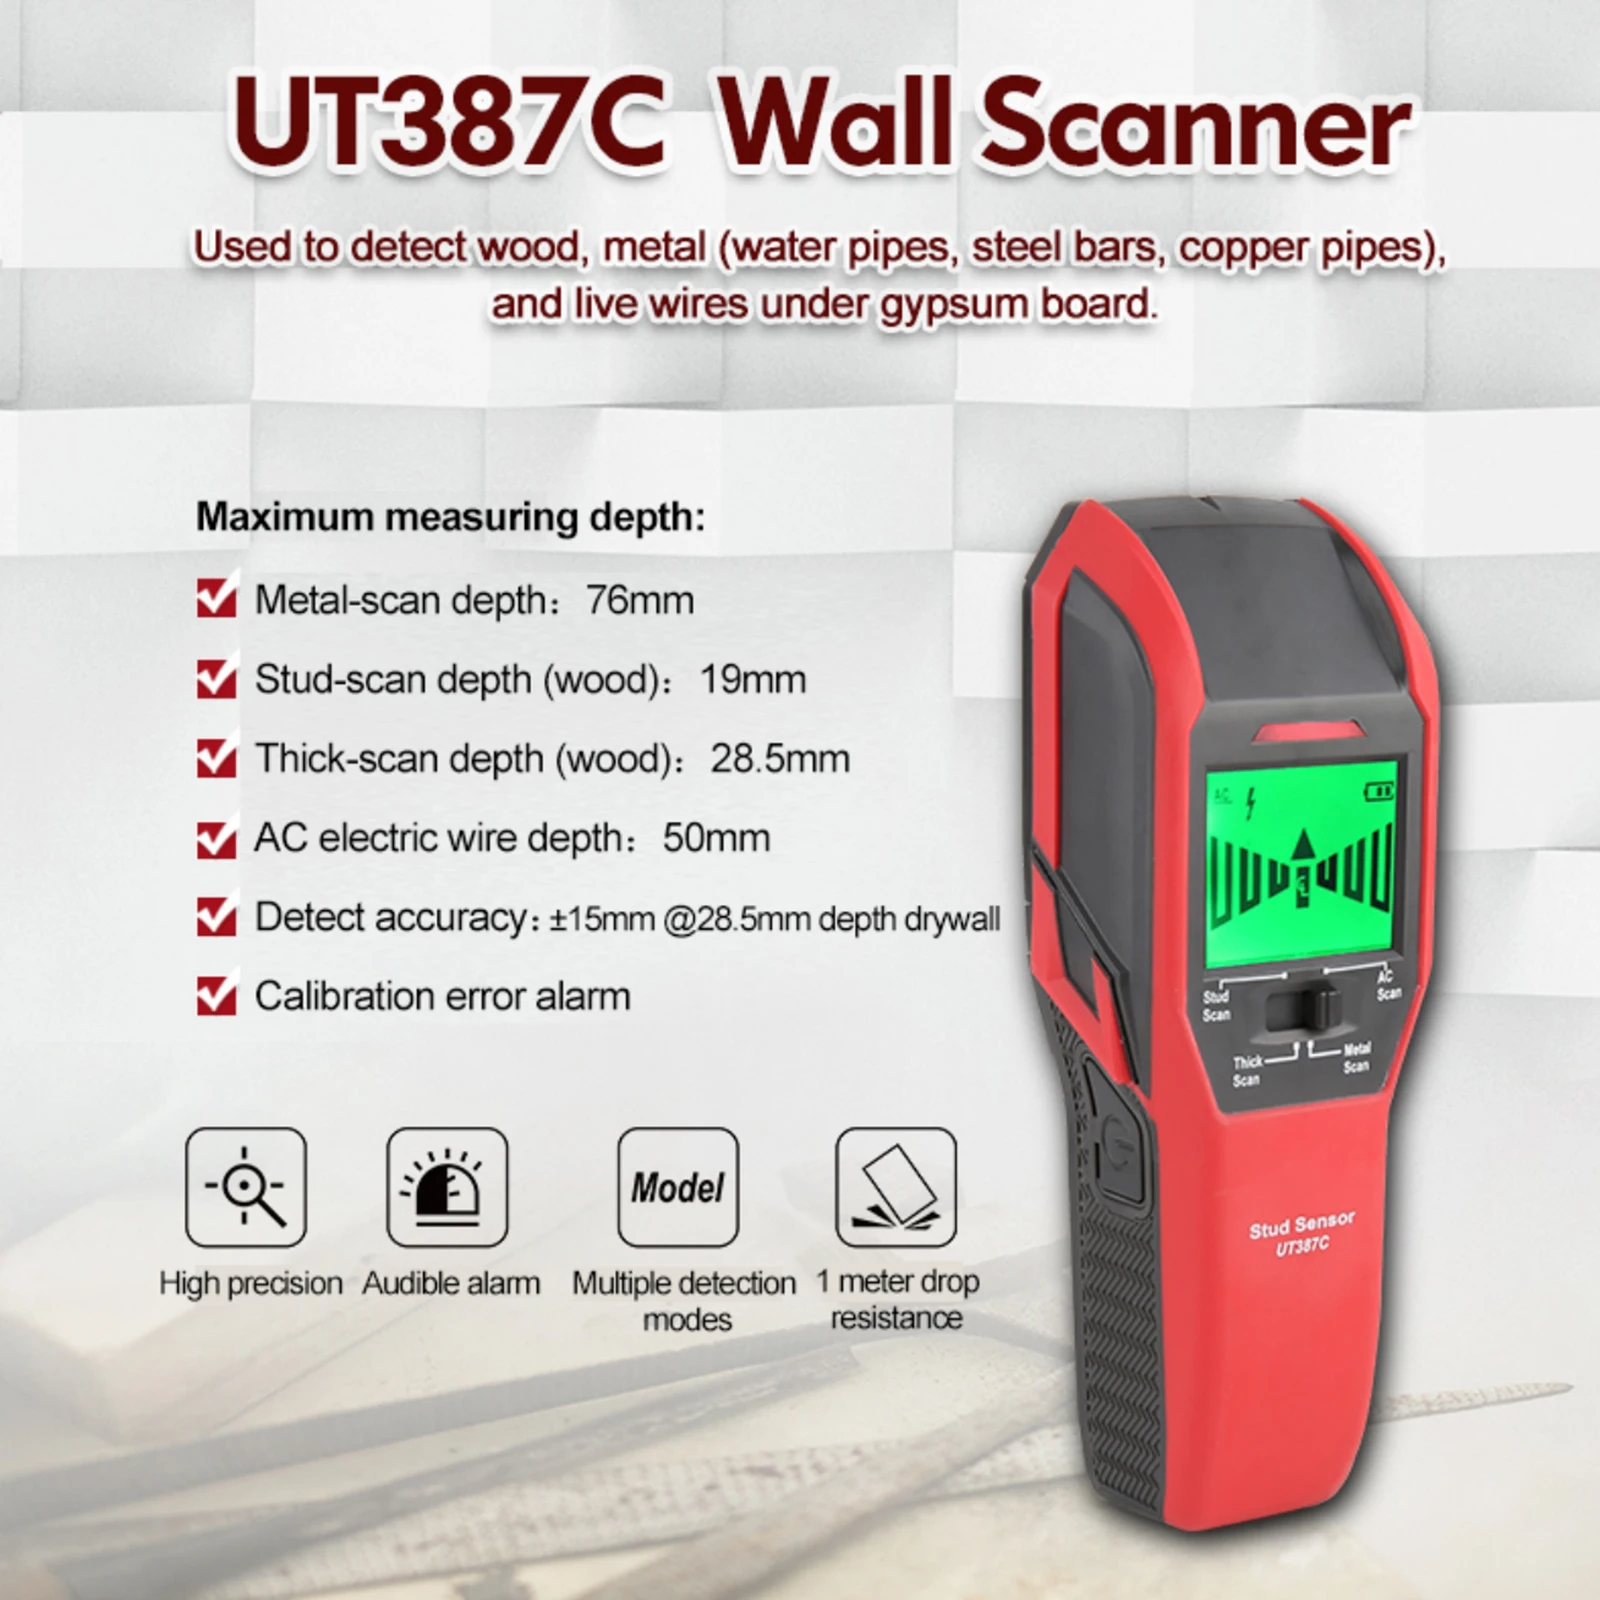 

Настенный сканер UT387C 4 в 1, электромагнитный индукционный цифровой детектор напряжения переменного тока, для обнаружения дерева и металла п...